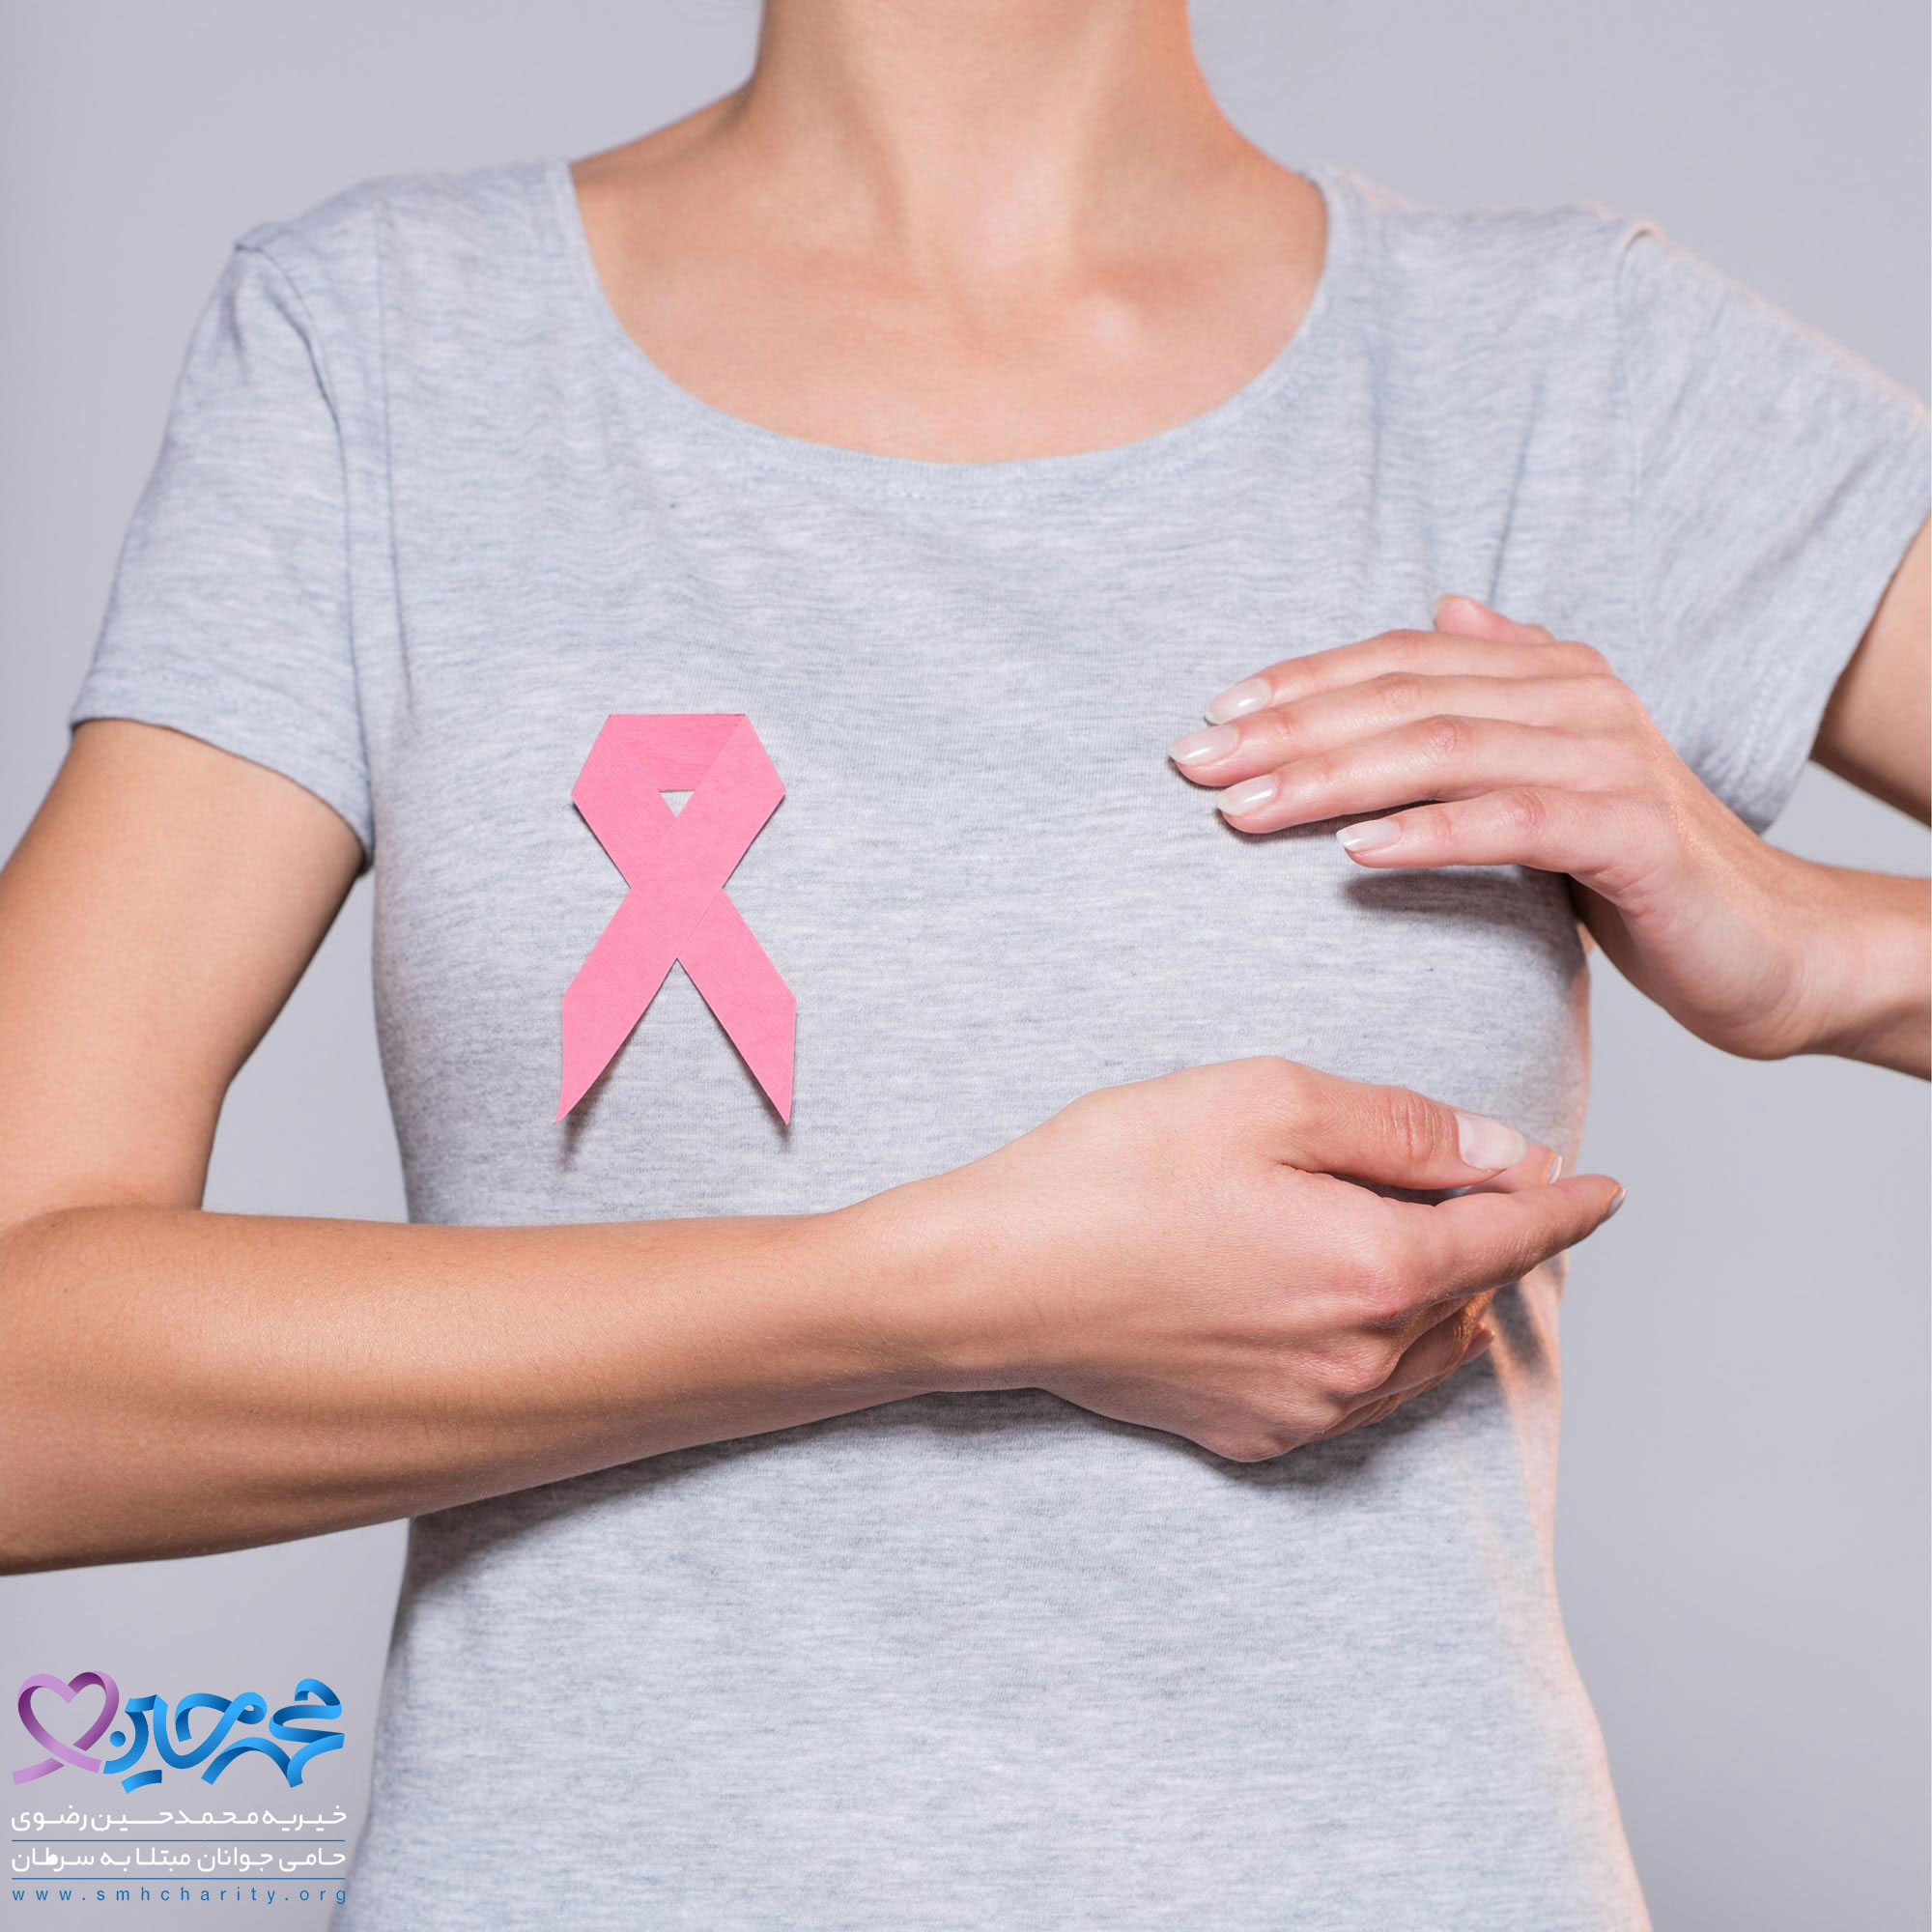 انواع مختلف سرطان پستان